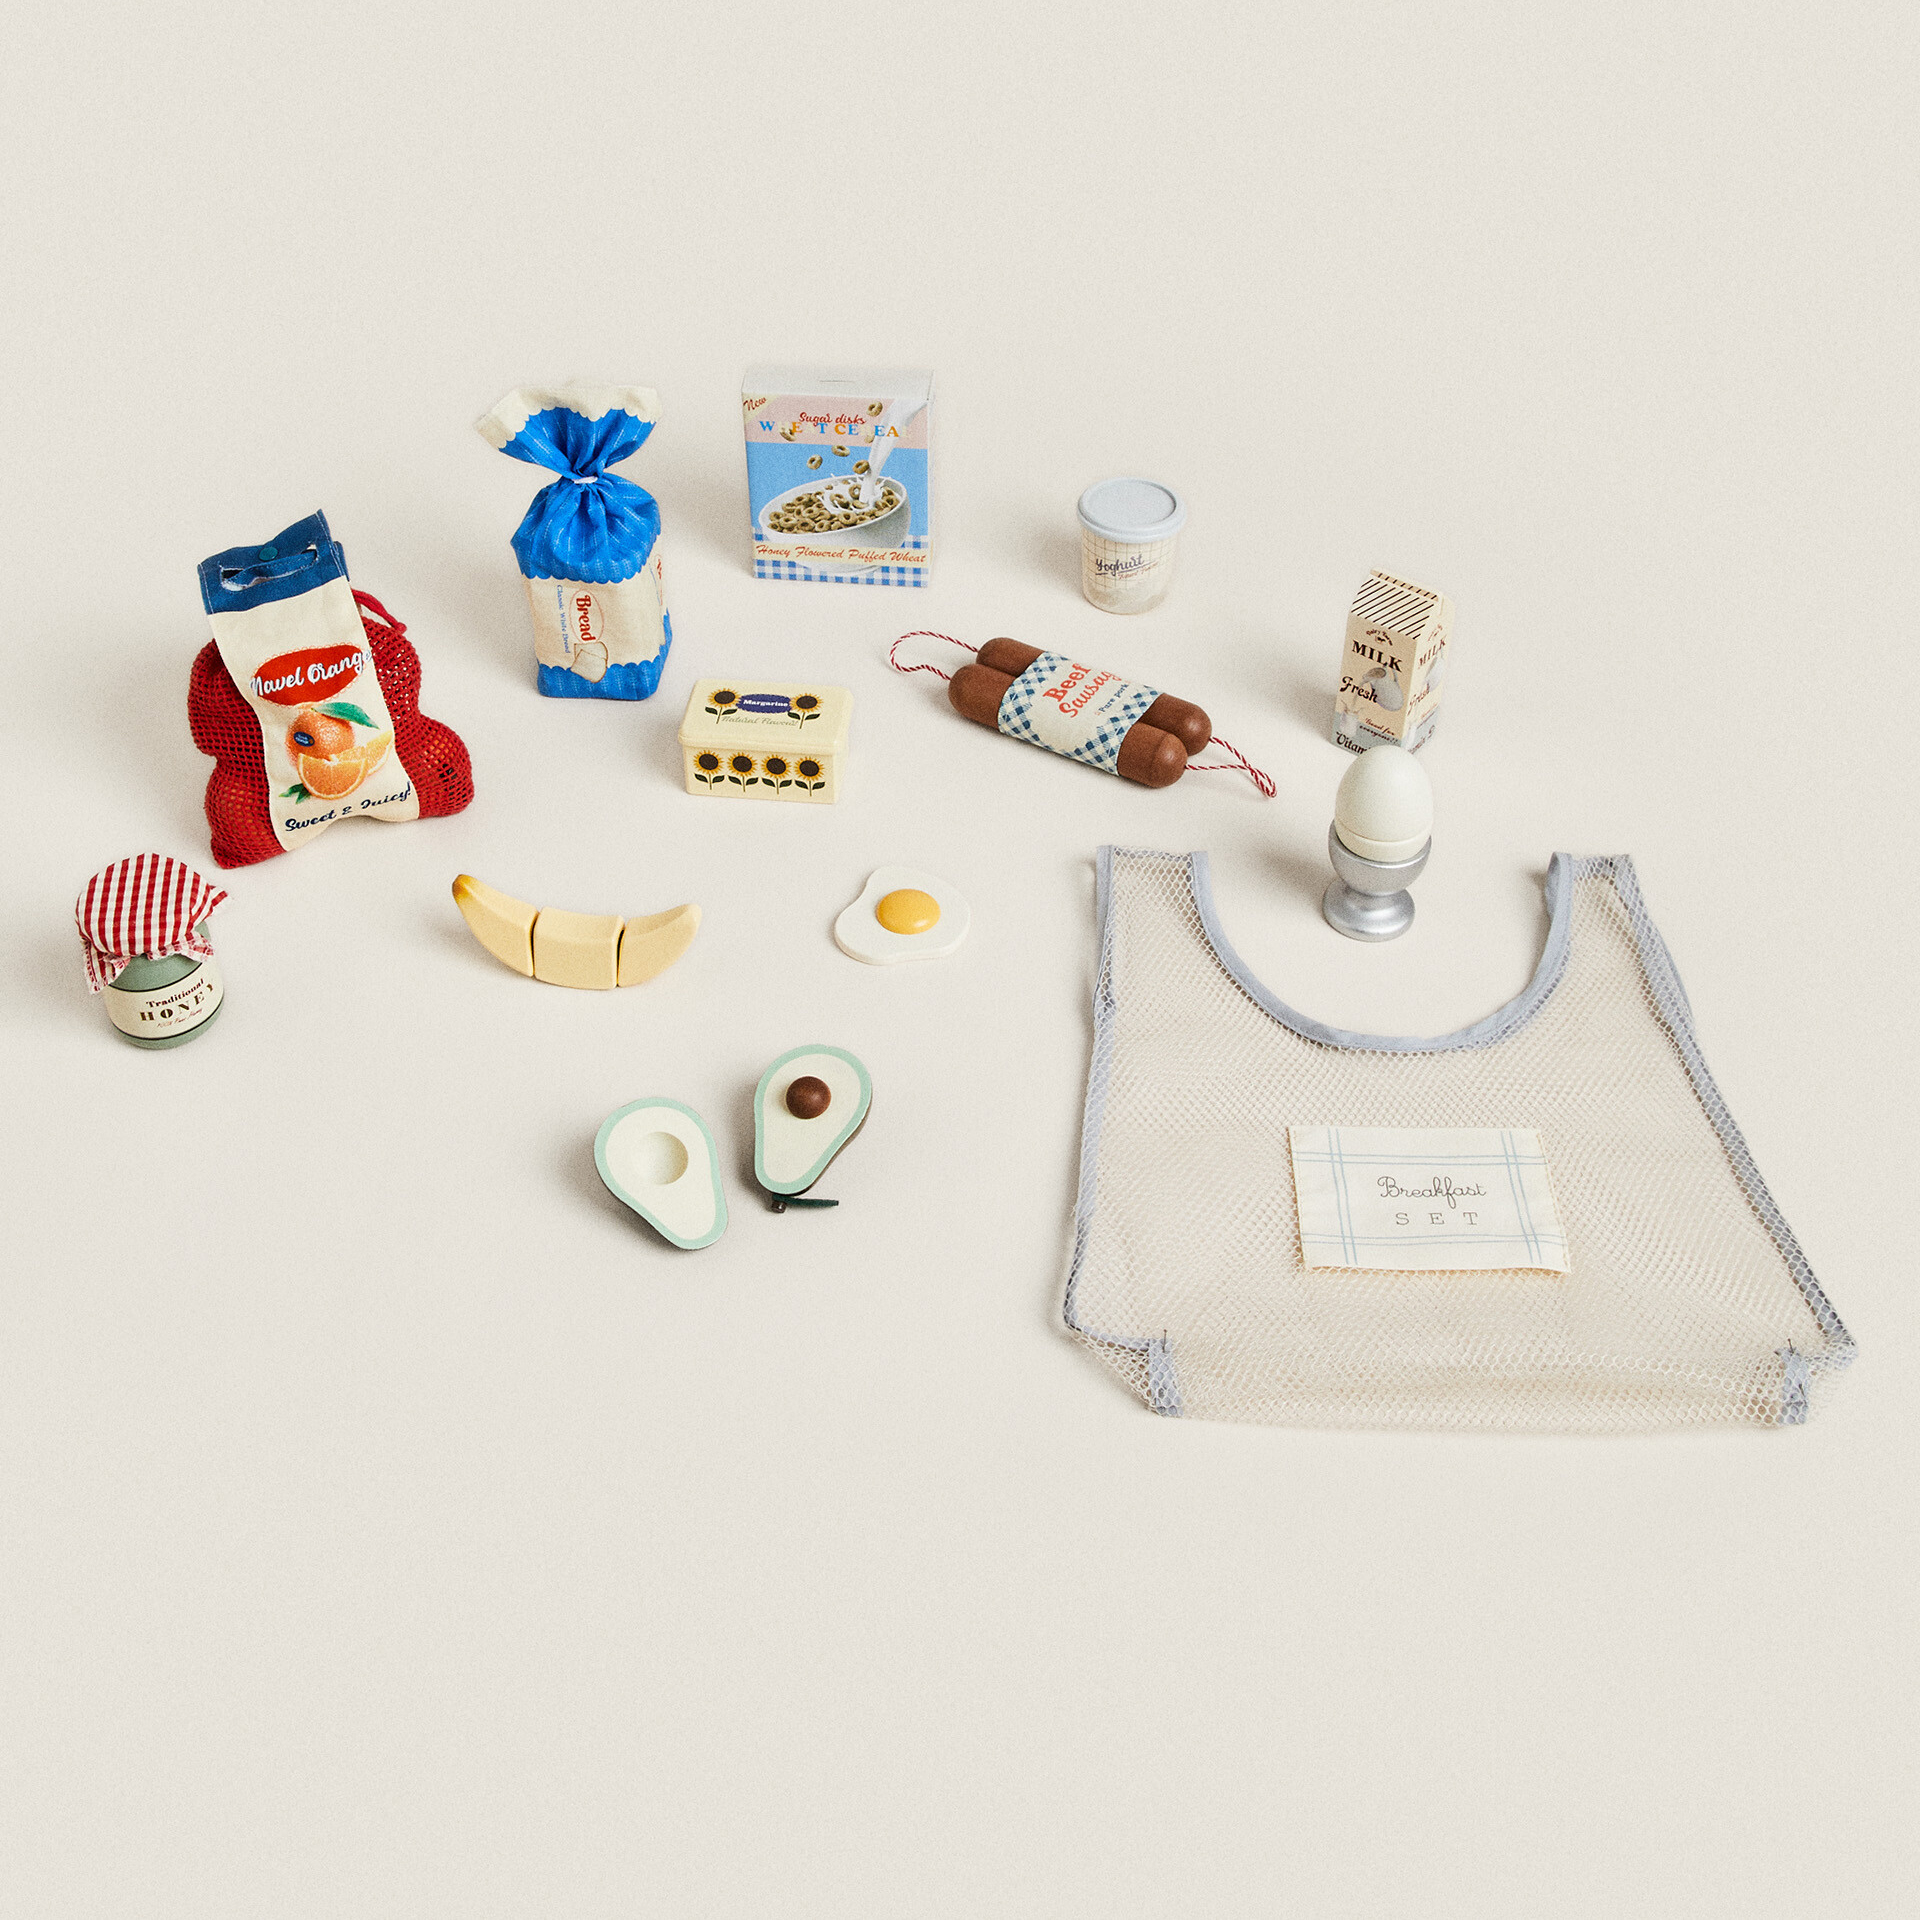 цена Набор игрушечных продуктов Zara Home, 13 предметов